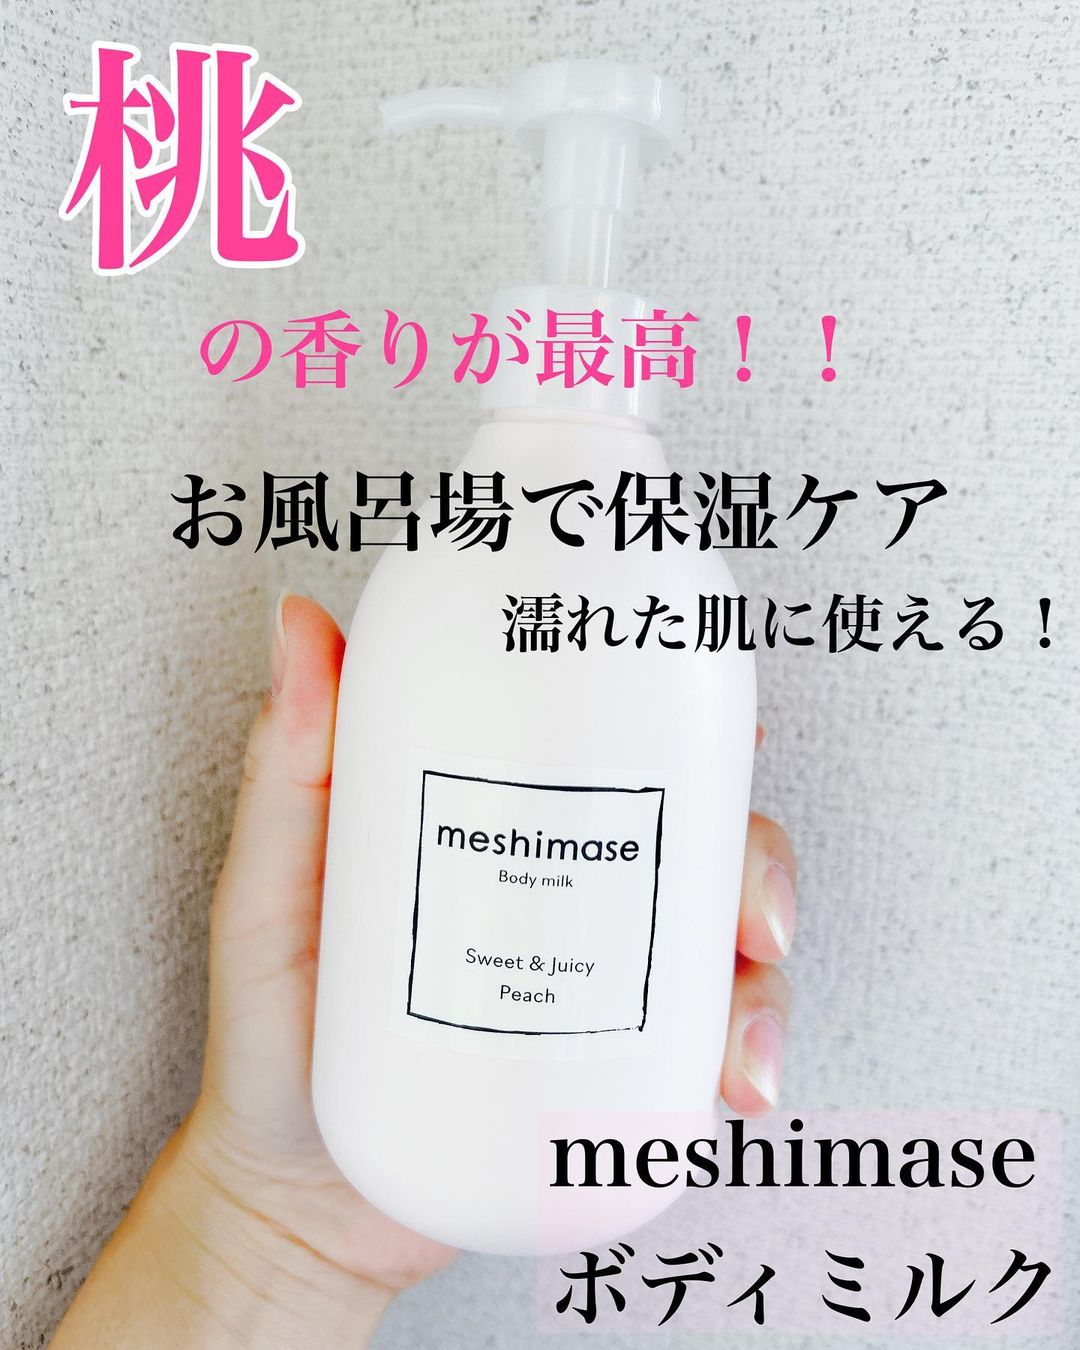 口コミ投稿：今回は『meshimase ボディミルク』をお試ししました！こちらの商品は☟☑︎濡れた肌にも…